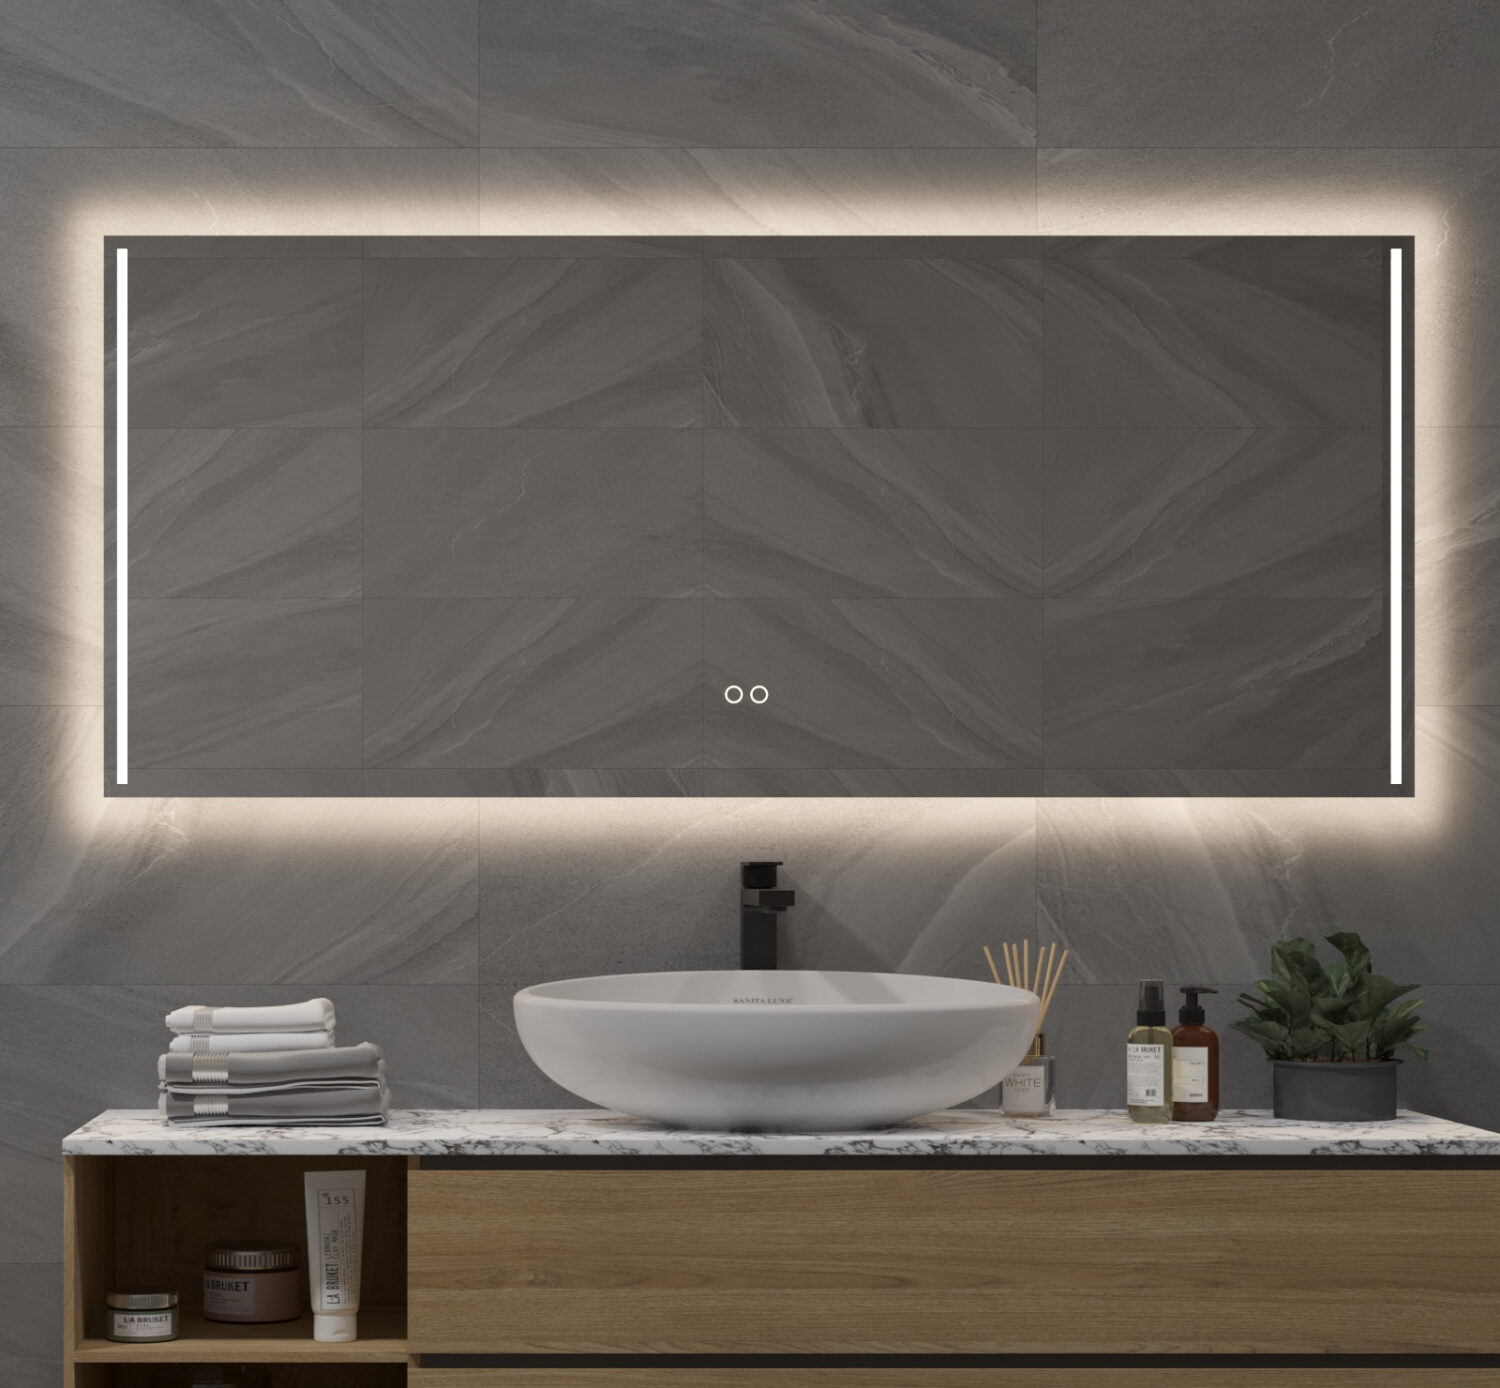 Stijlvolle en praktische badkamerspiegel met verlichting, spiegelverwarming en dubbele touch knop met handige dimfunctie en kleurenwissel